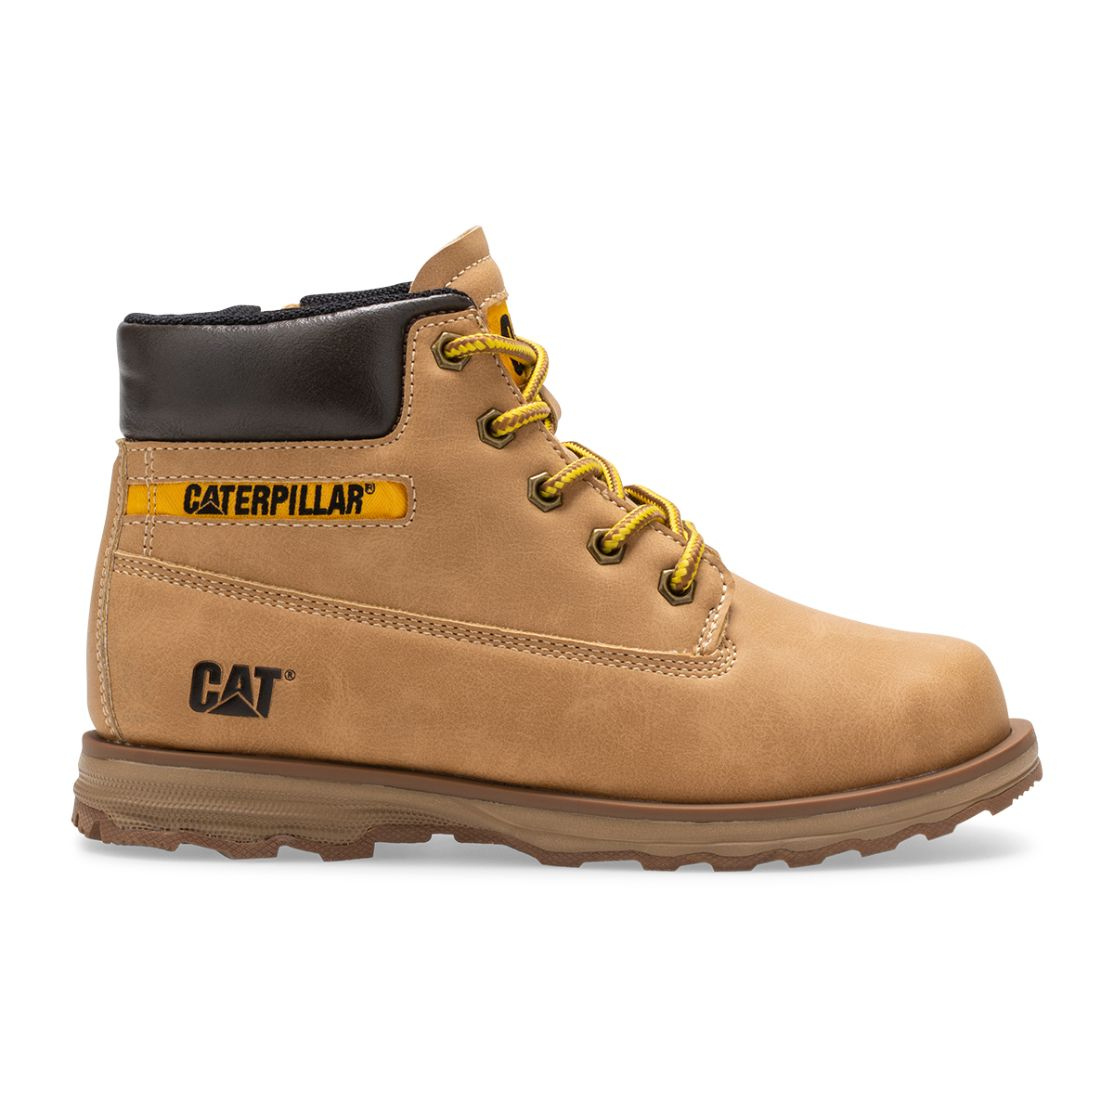 Caterpillar Founder - Kids Boots - Brown - NZ (374RYKHQN)